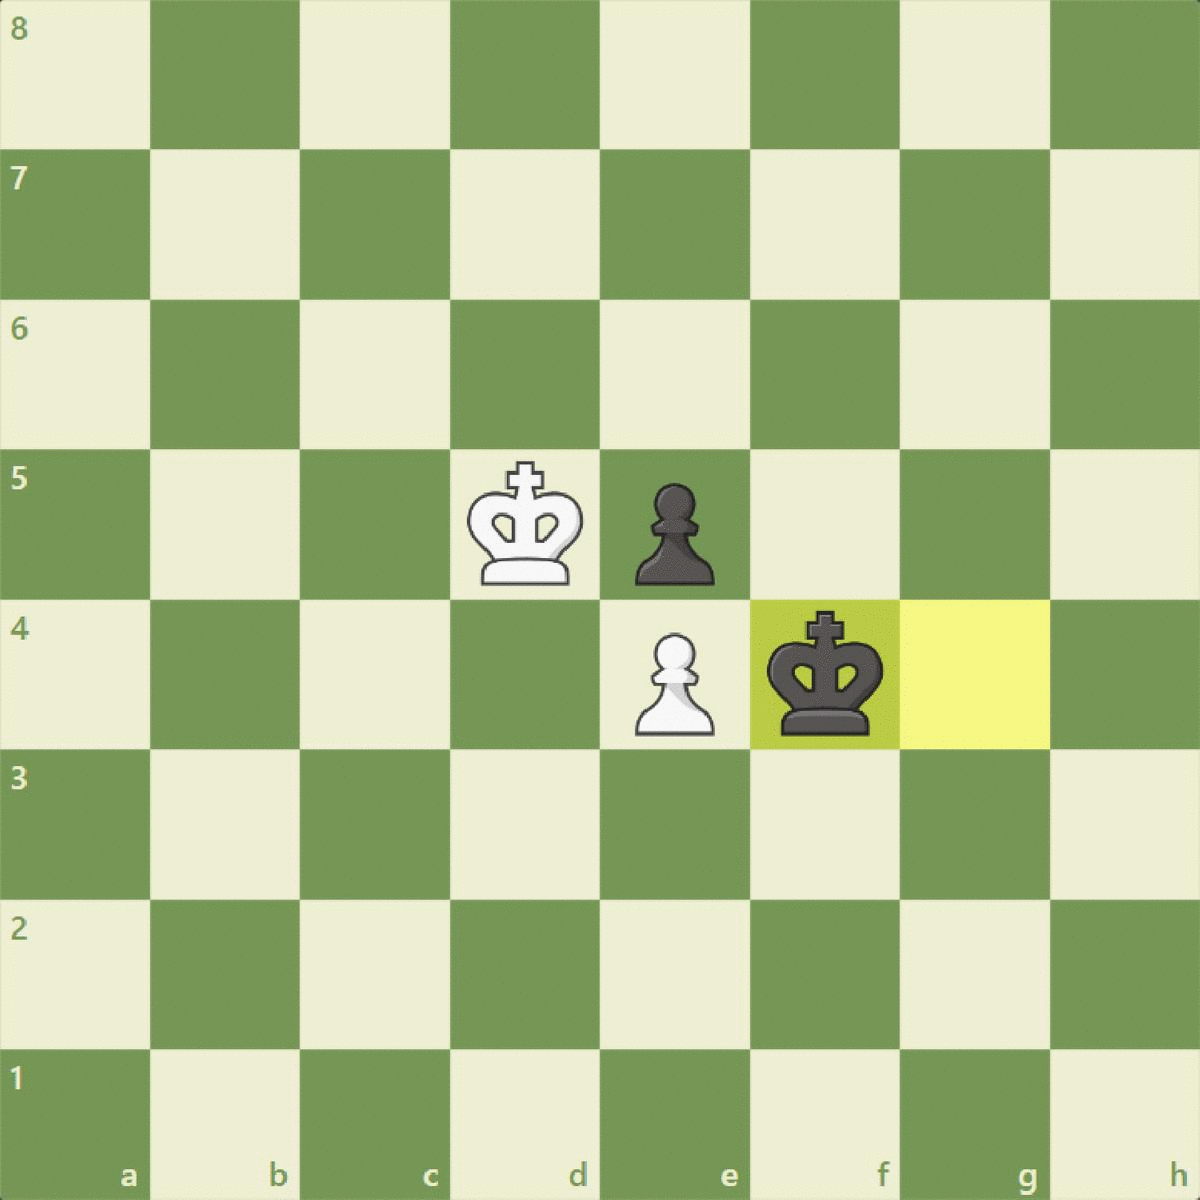 Zugzwang t camisa tamanho grande 100% algodão zugzwang xadrez ganhar para  perder movimento peça peça de xadrez posição você mover eu ganhar xadrez